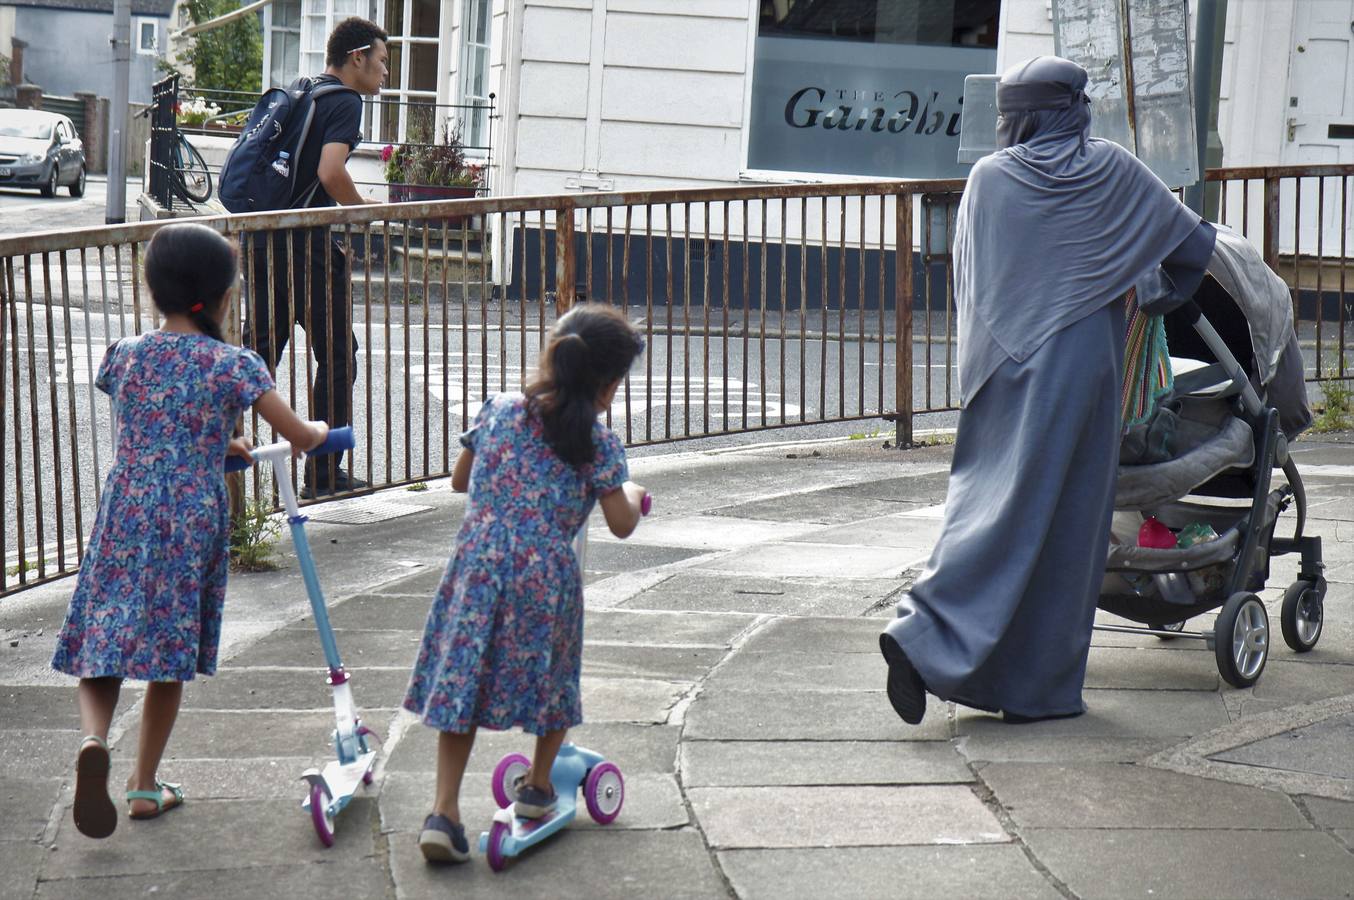 Una mujer musulmana vestida con el típico niqab observa a sus dos hijas vestidas al estilo occidental en una calle de Exeter. 